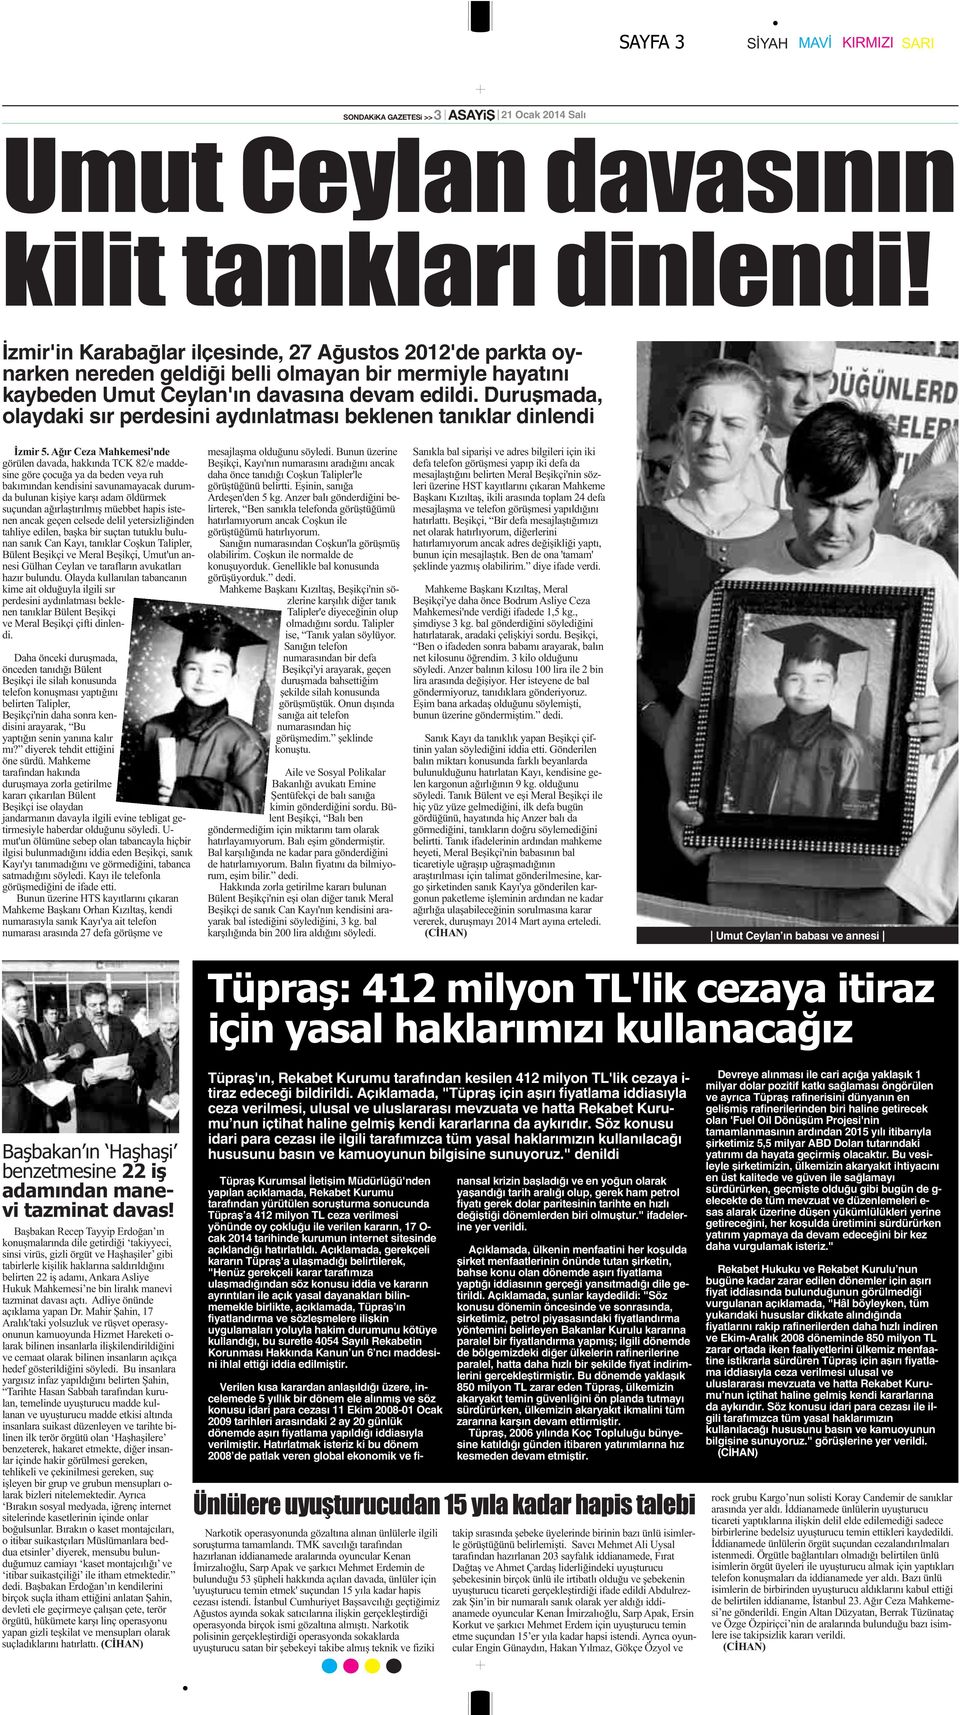 Duruşmada, olaydaki sır perdesini aydınlatması beklenen tanıklar dinlendi Umut Ceylan ın babası ve annesi Tüpraş'ın, Rekabet Kurumu tarafından kesilen 412 milyon TL'lik cezaya i- tiraz edeceği